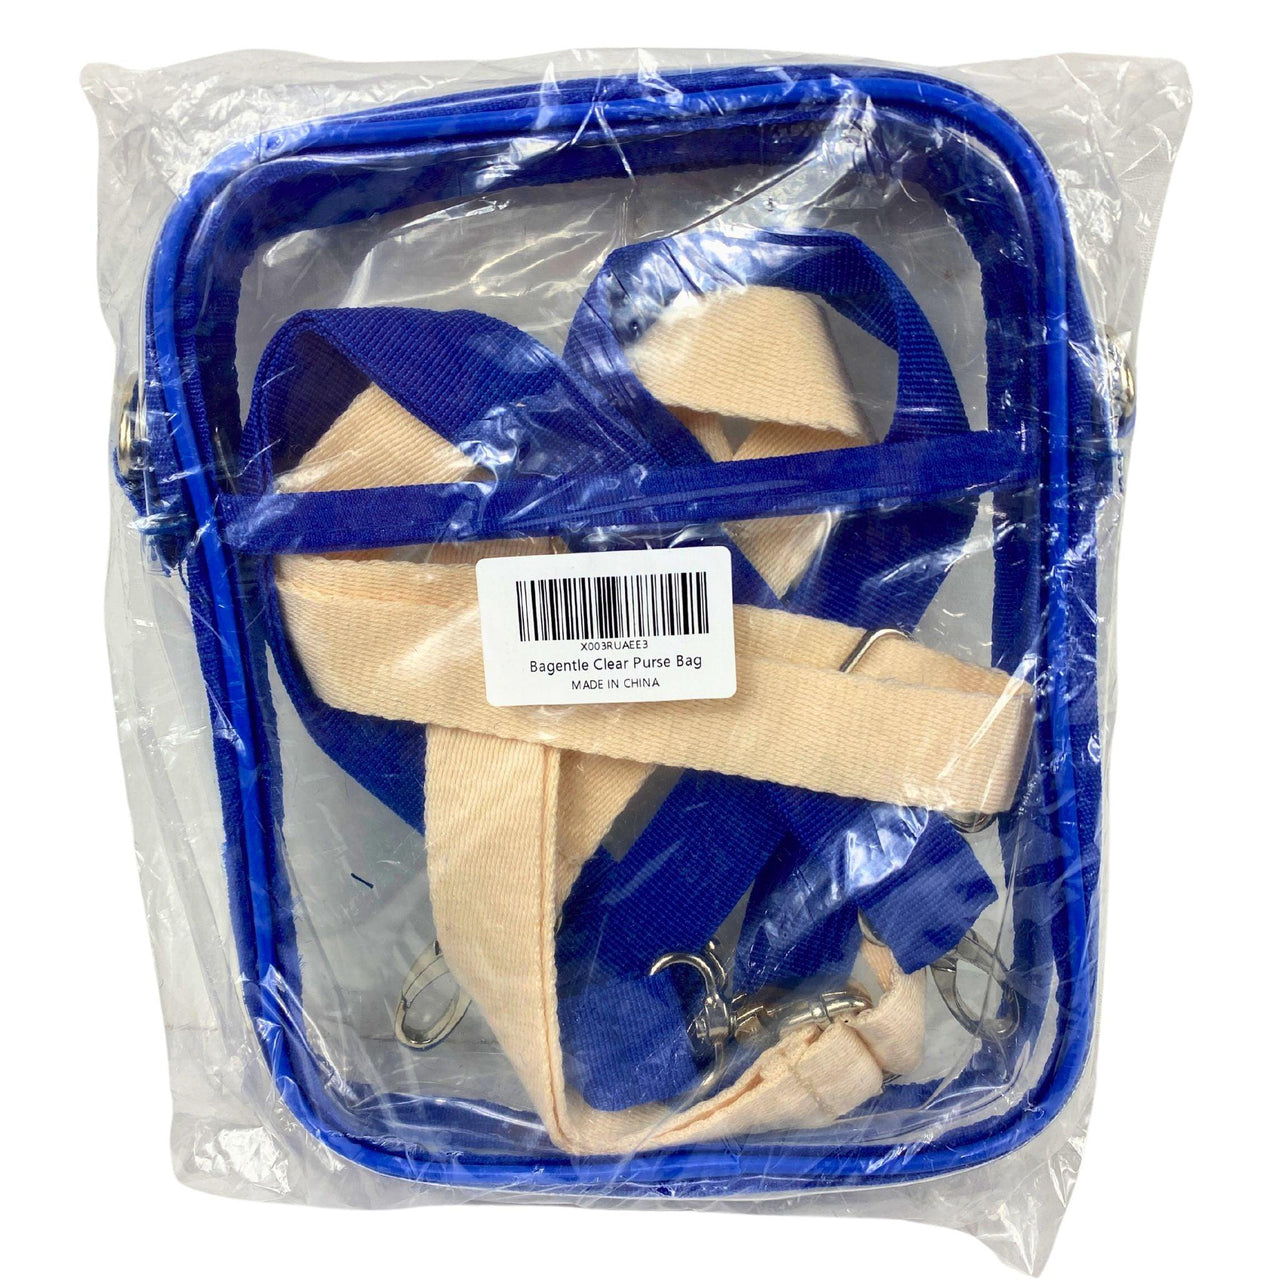 Bagentle Clear Purse Bag Blue (50 Pcs Lot) - Discount Wholesalers Inc